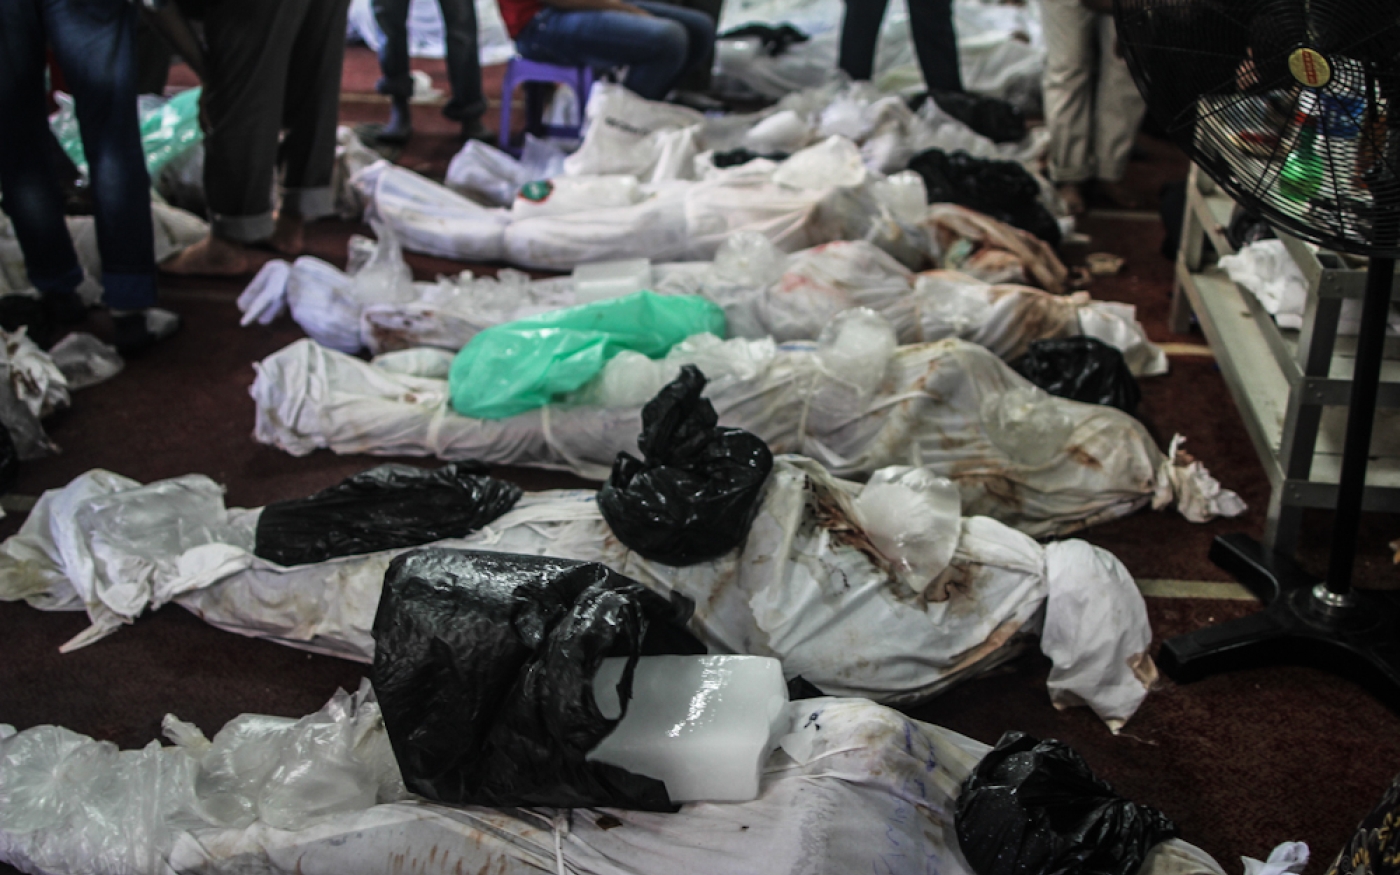 Bodies of dead protesters in El-Eman mosque